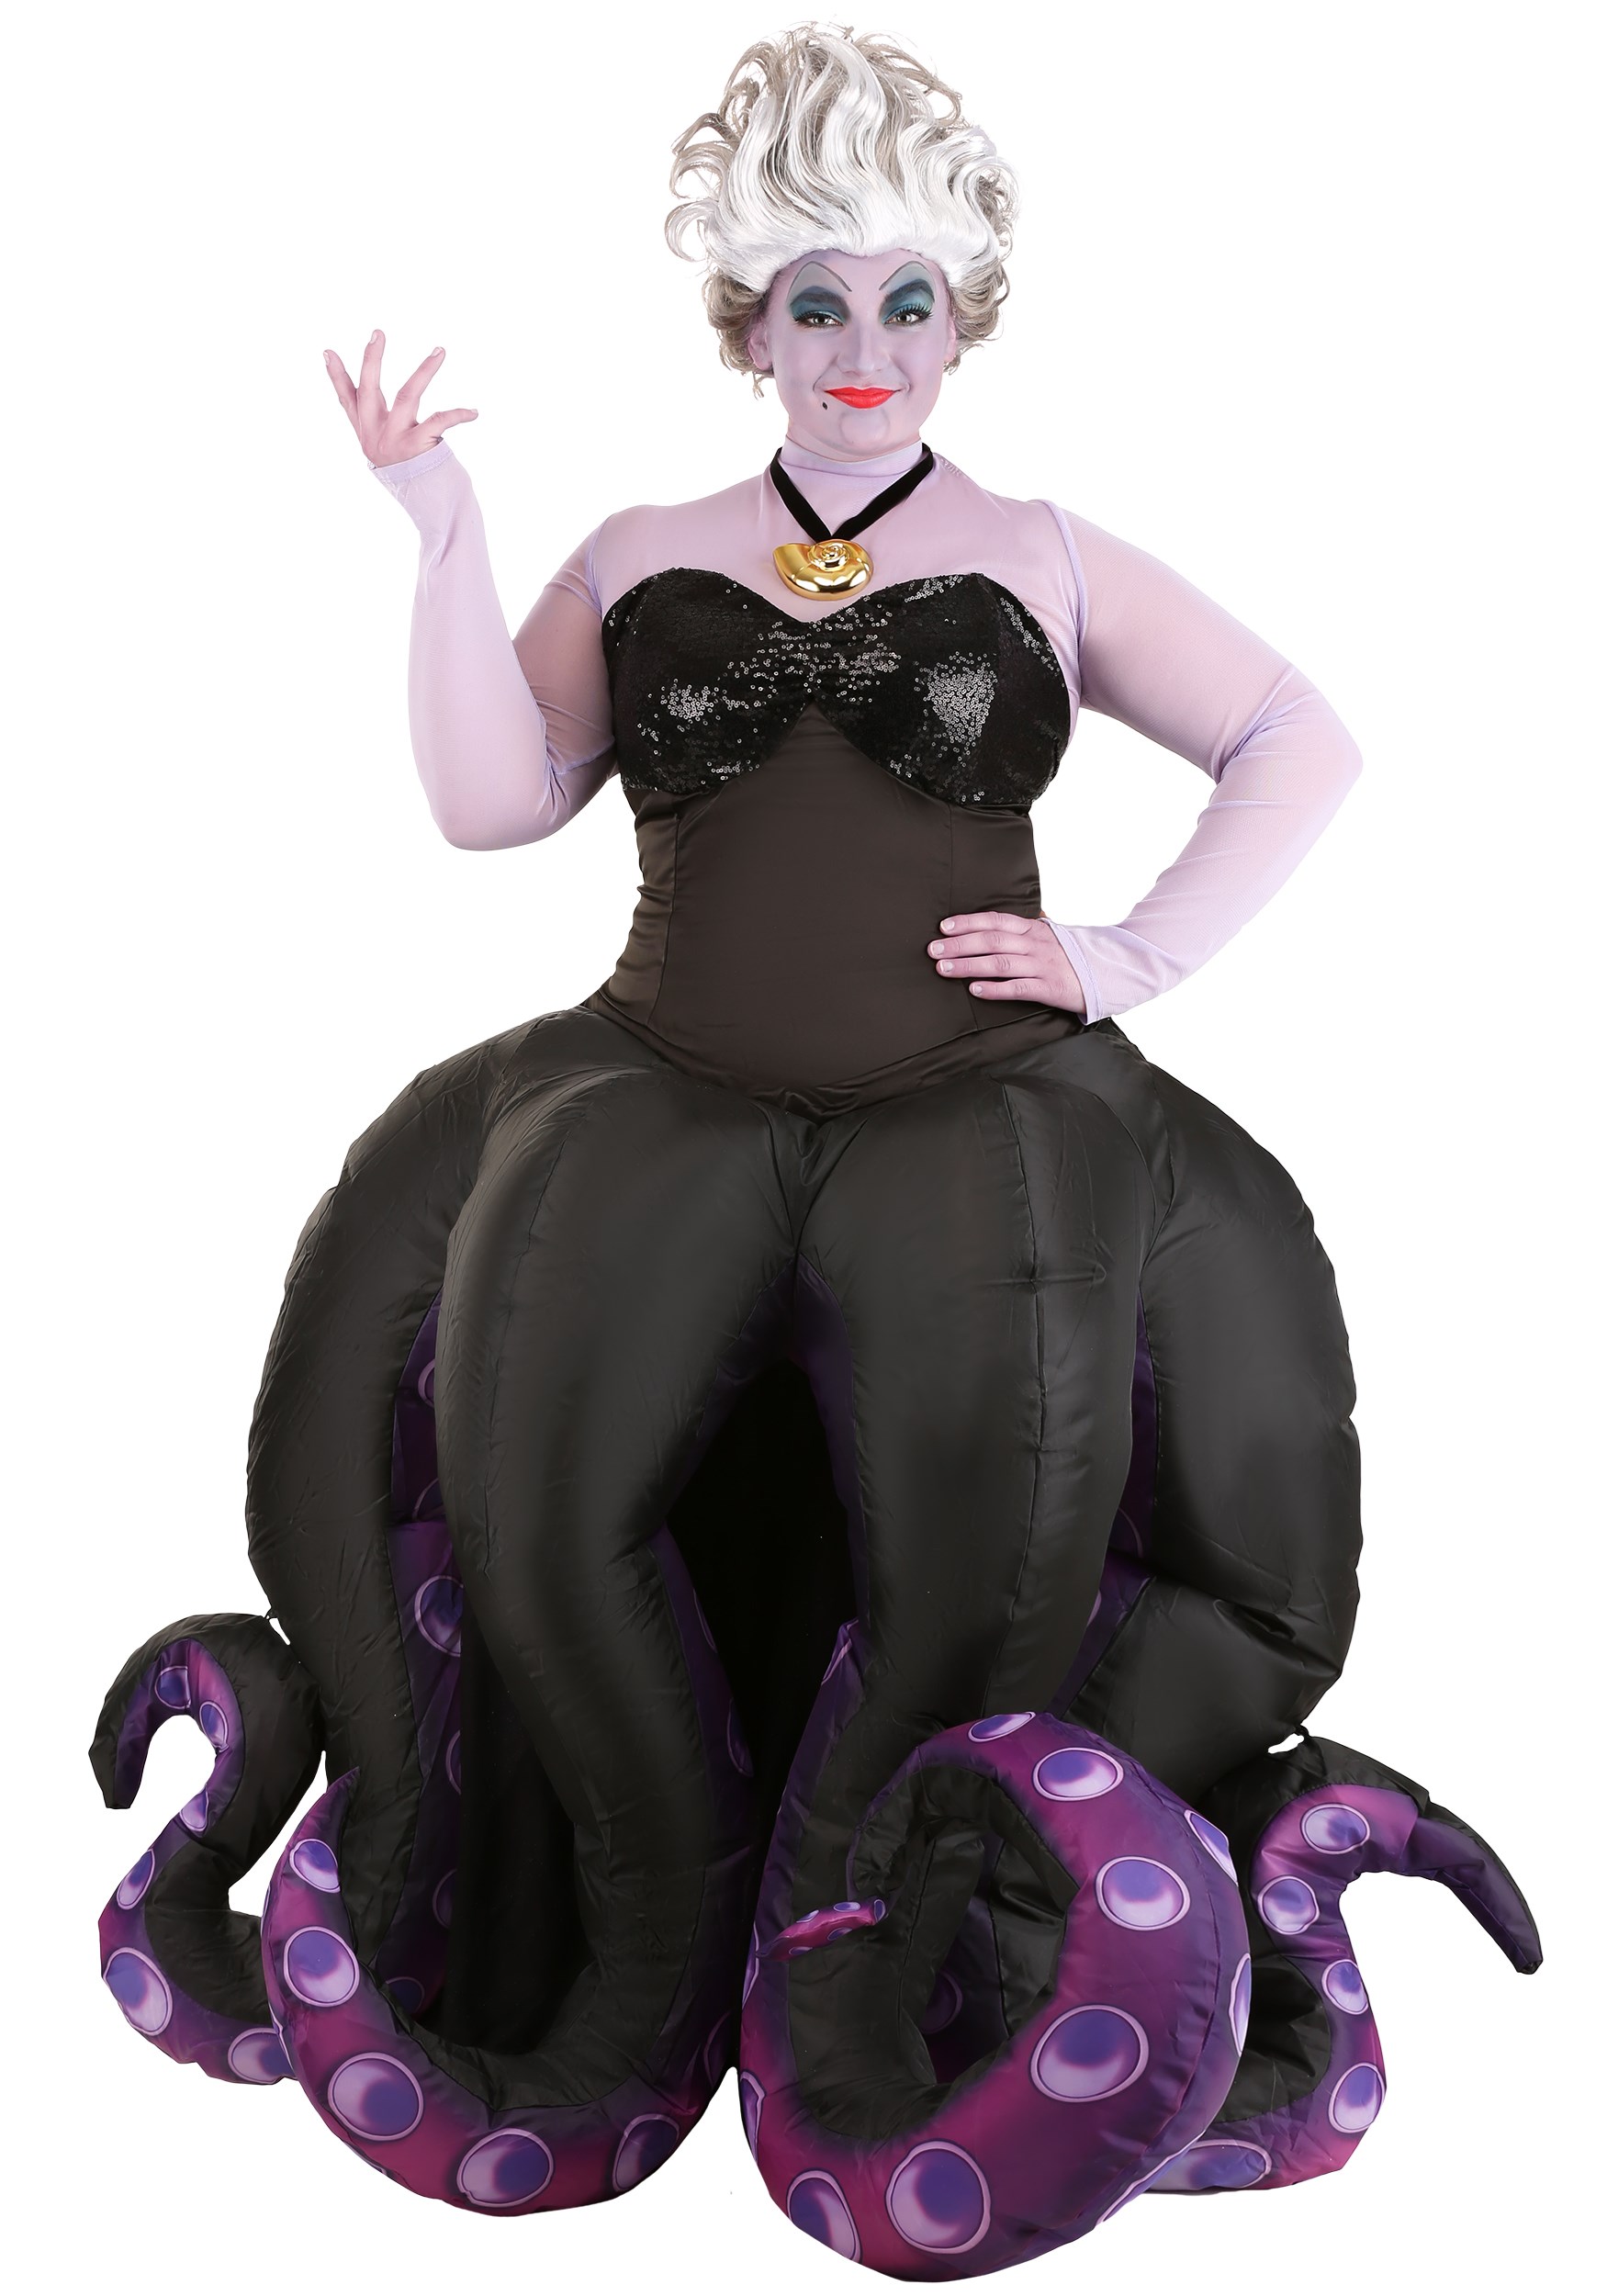 Fantasia Ursula da Pequena Sereia Adulto Inflável